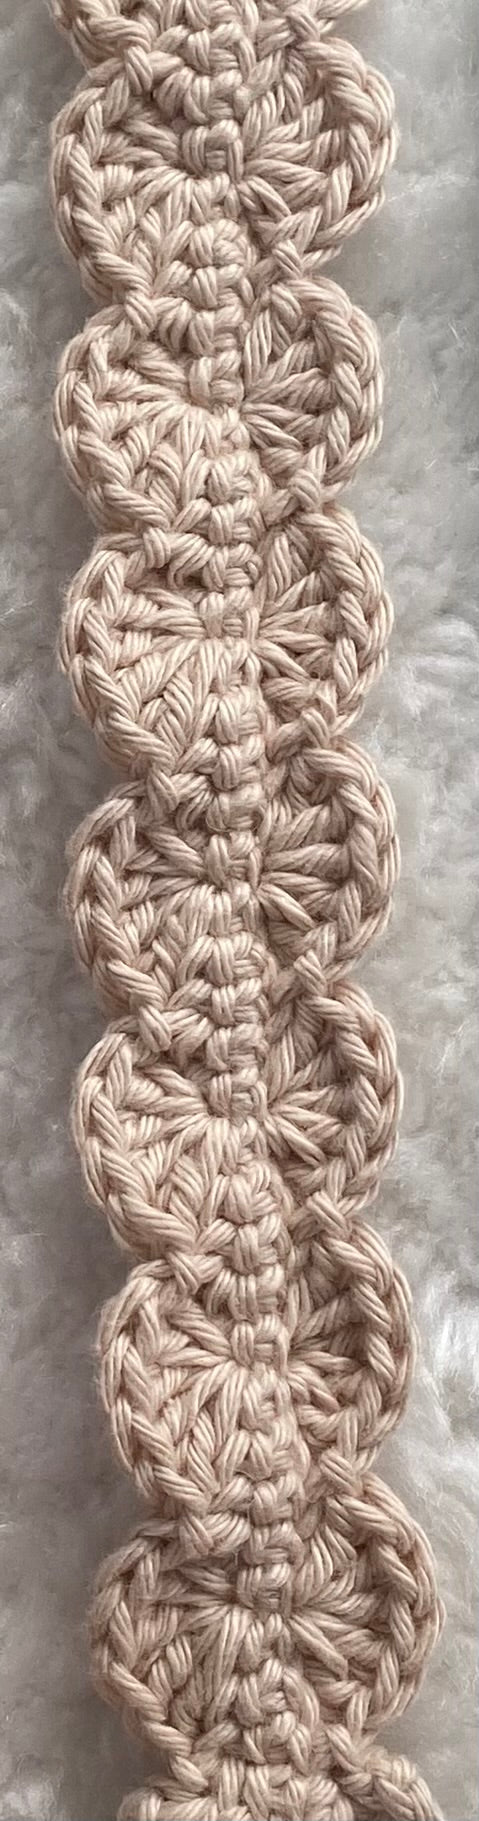 Attache-tétines fluffy - Fait à la main au crochet - Made in France